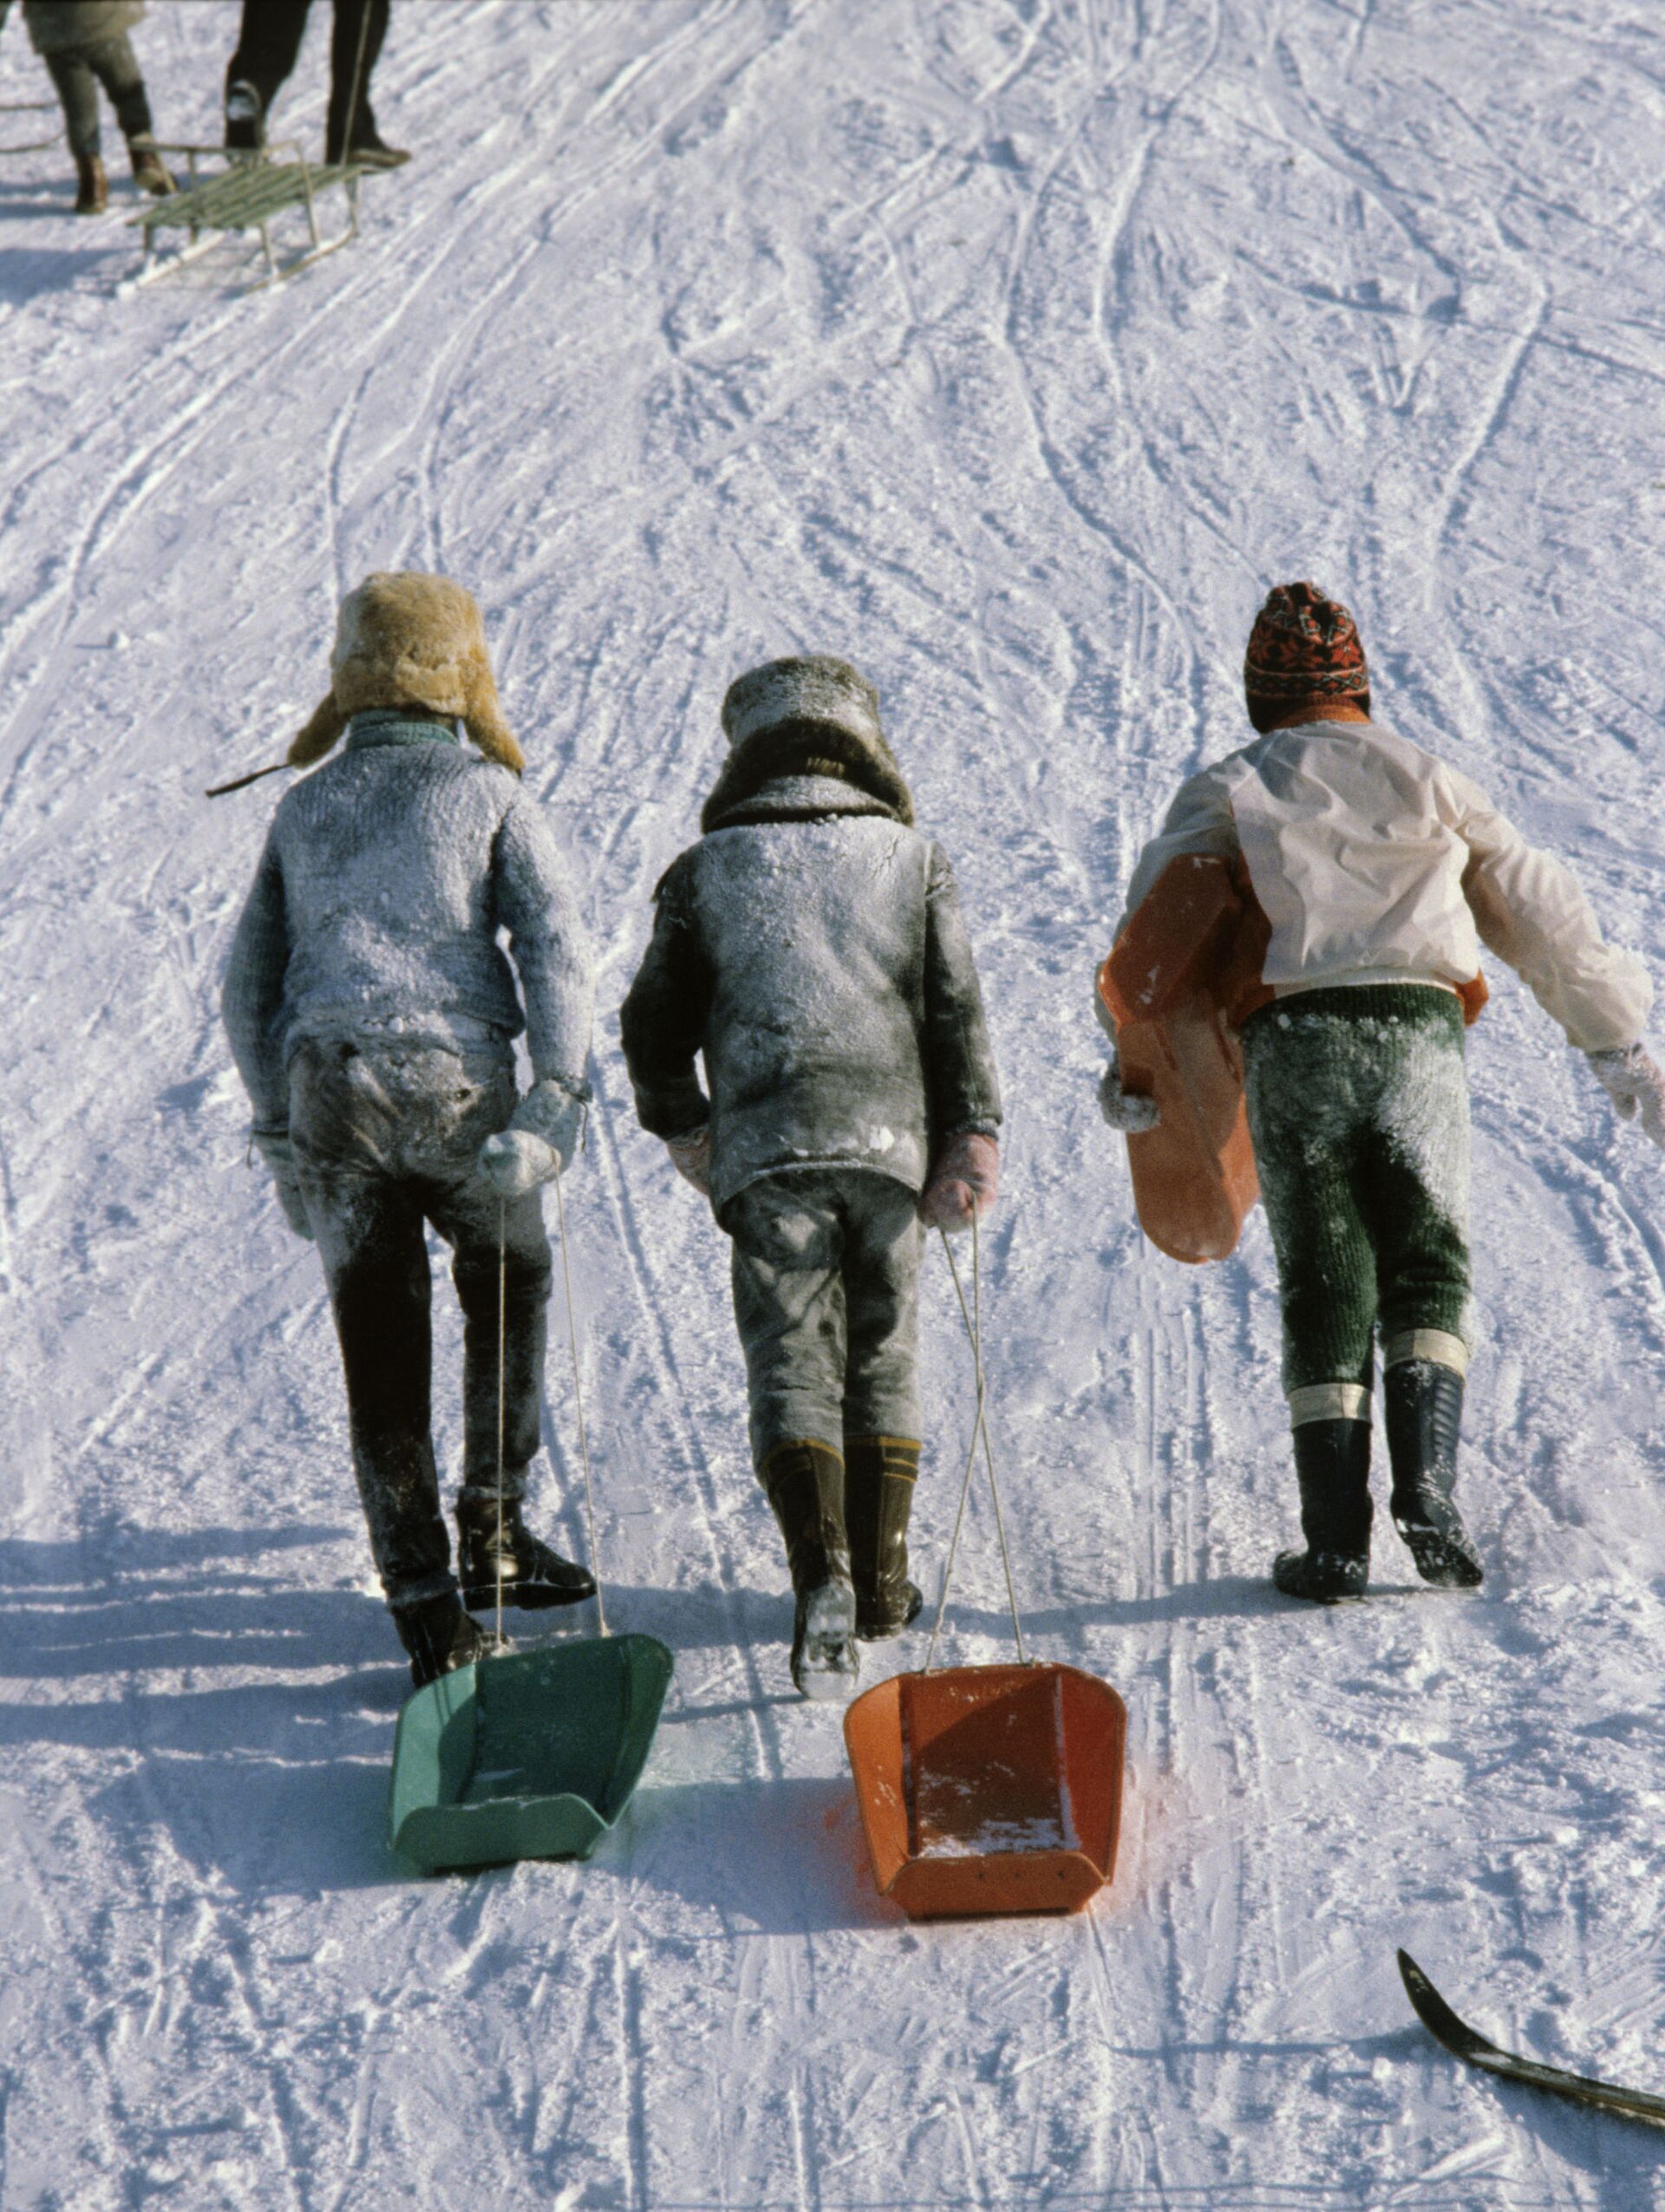 Дети катаются на санках, 1983 год - Sputnik Беларусь, 1920, 23.12.2021